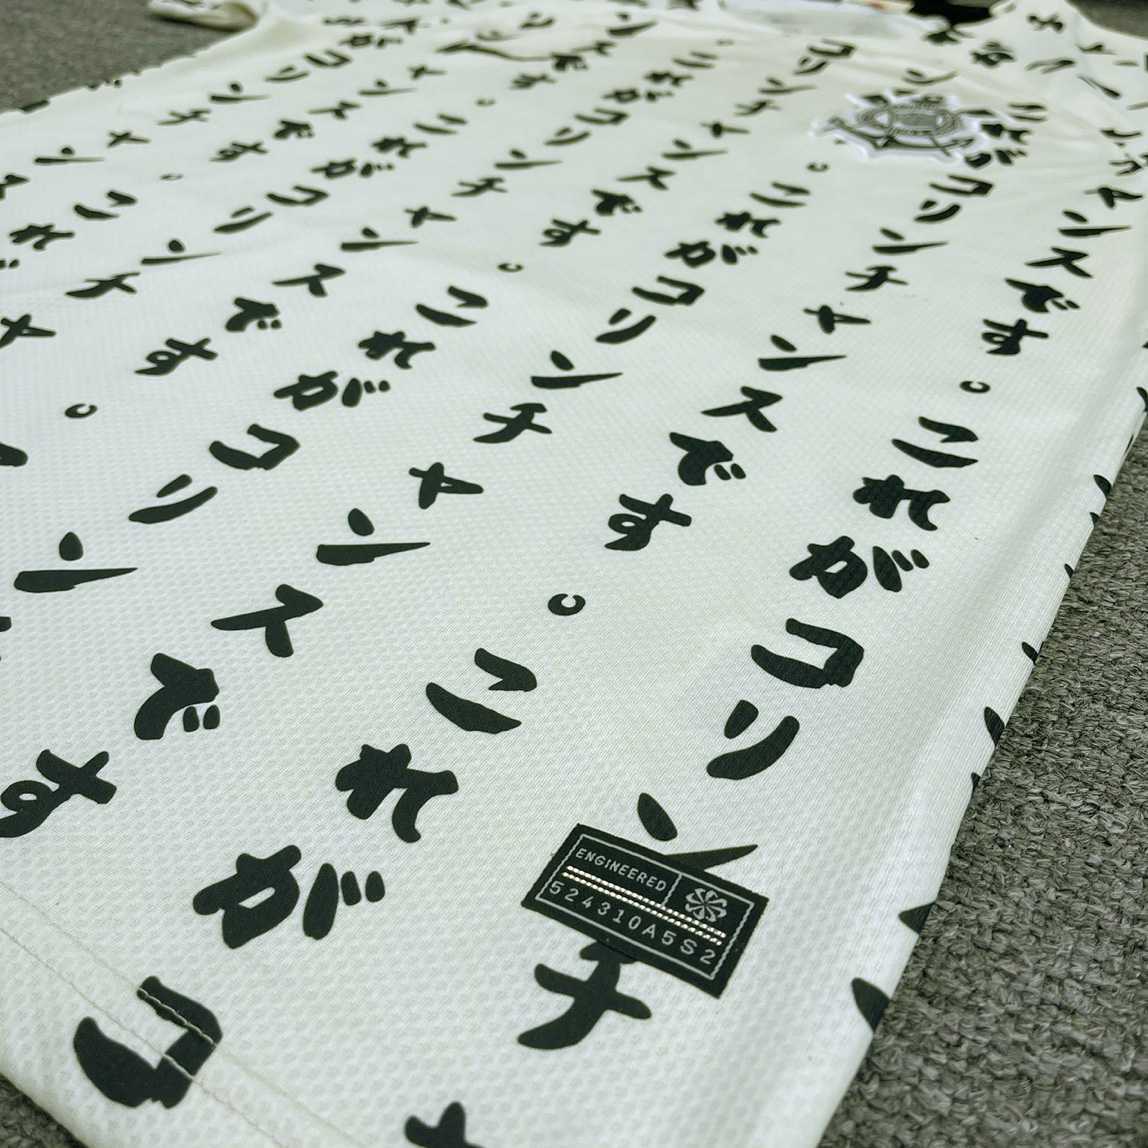 Bộ quần áo đá banh clb bóng đá Corinthians Paulista Nhật Bản hoạ tiết chữ thư pháp Shodo vàng logo thêu 1.1